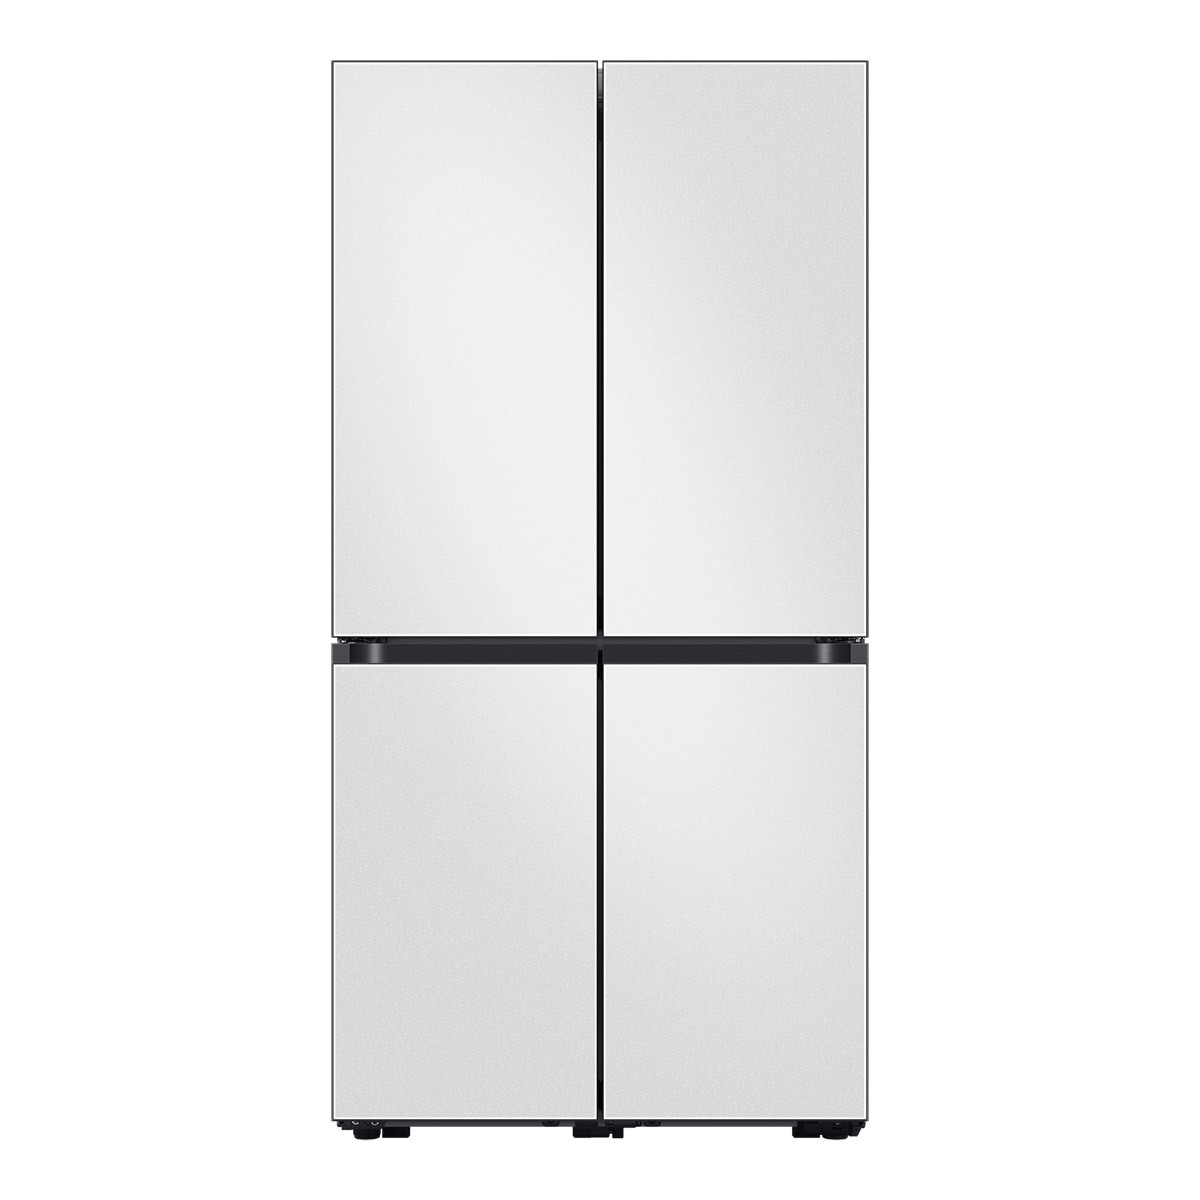 삼성 비스포크 냉장고 870L, 코타화이트